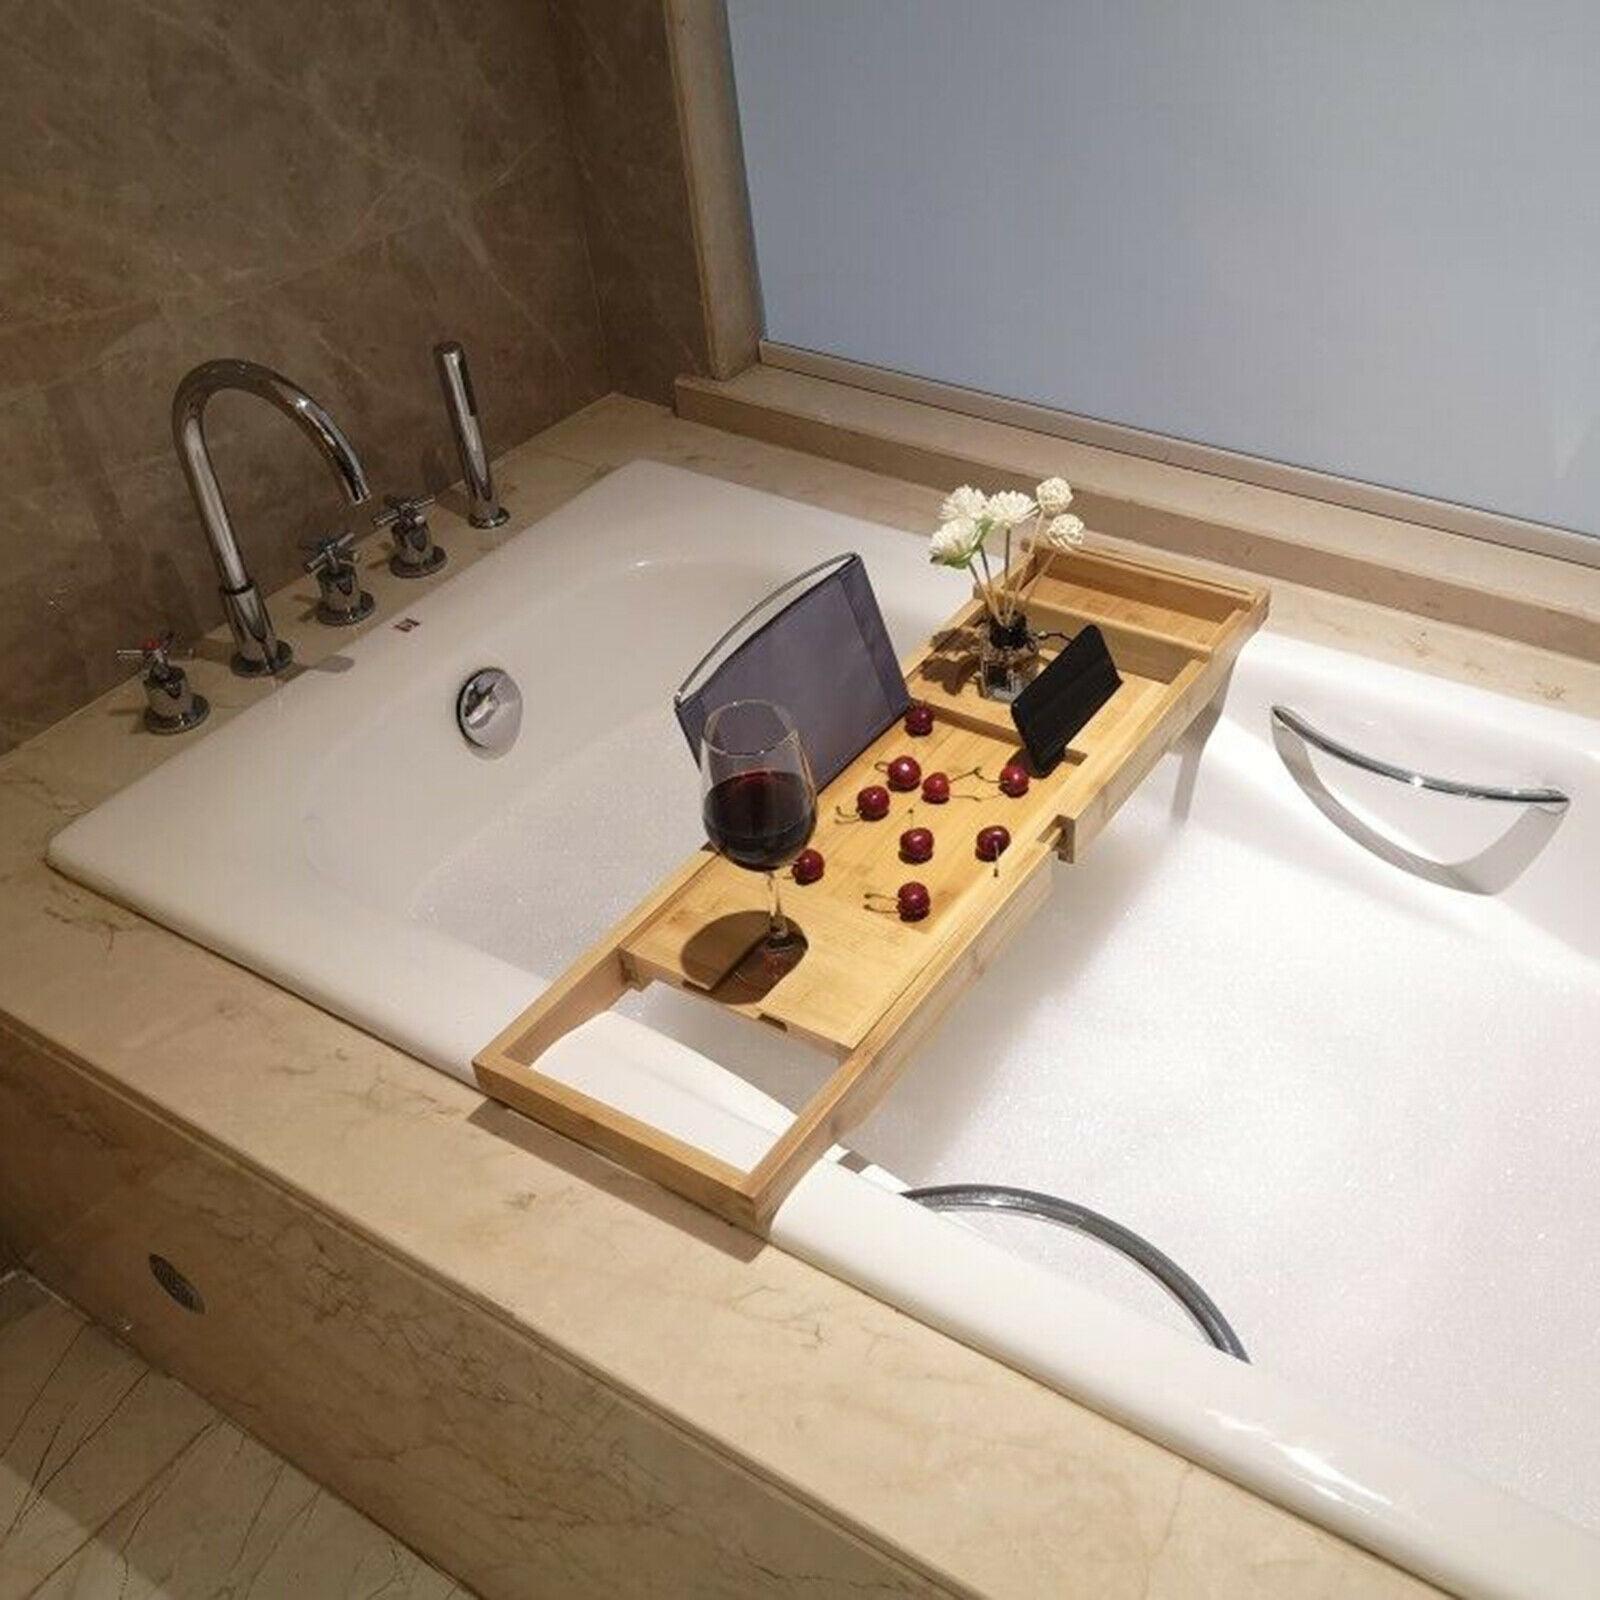 Bathtub Caddy Bamboo Bath Tub Rack Tray Bathroom Cloth Book/Pad/Tablet Holder 